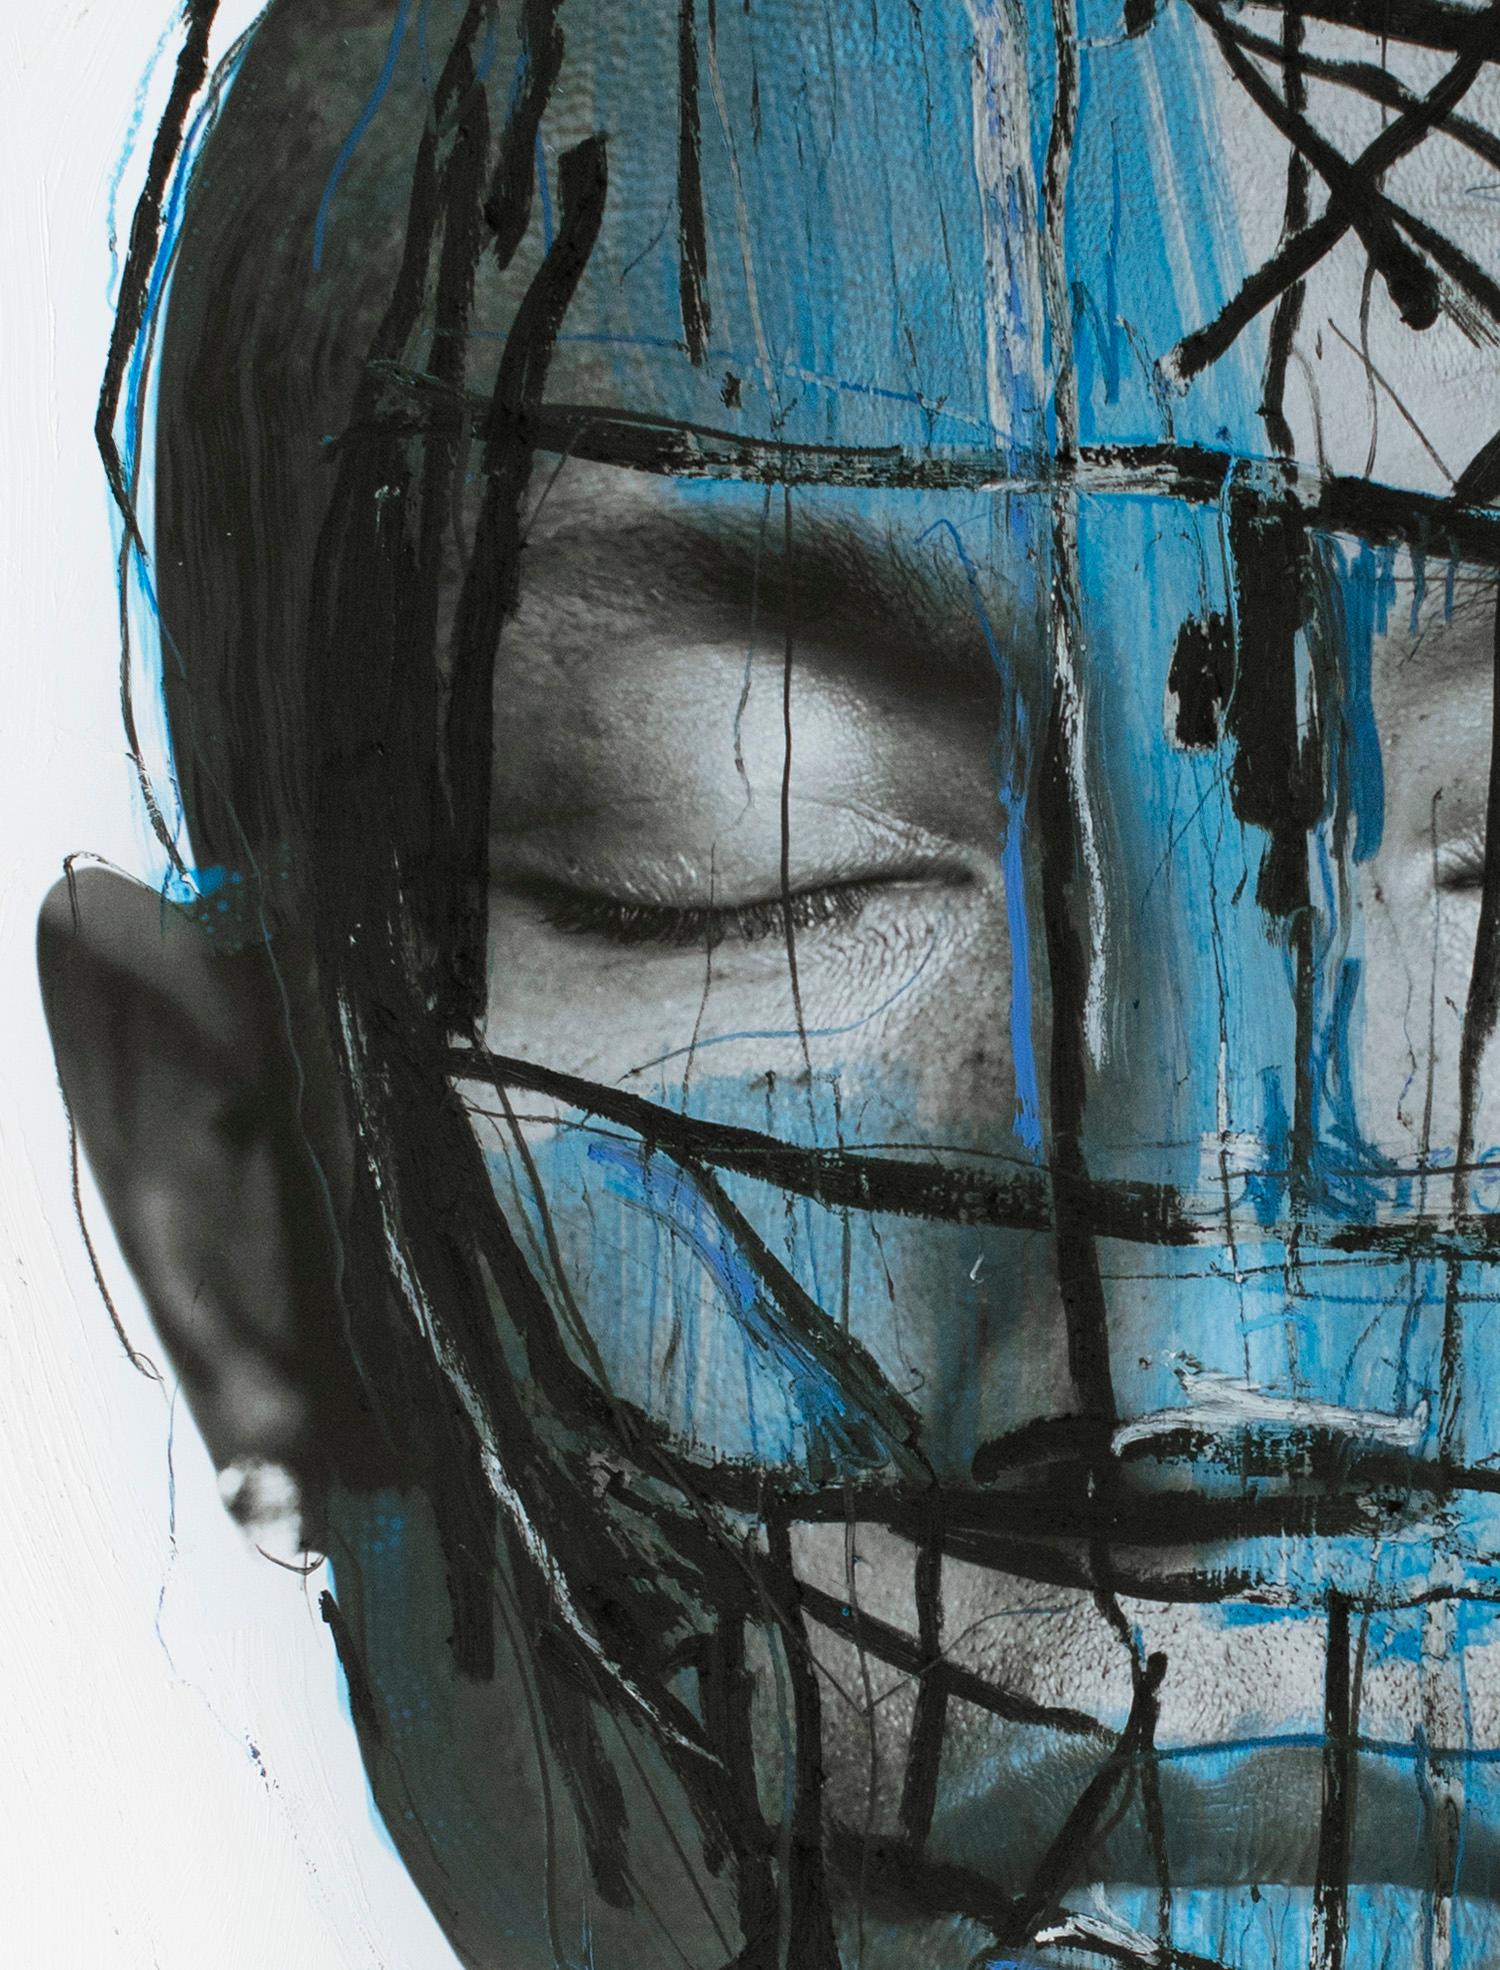 The Radiants, portrait de Pharrell Williams (encadré) 2020, par Hunter & Gatti
Acrylique et pastel à l'huile sur impression pigmentaire
Taille de l'image : 76 cm. H x 61 cm. W
Taille encadrée : 90,5 cm. H x 82,5 cm. L x 5 cm. D
Unique en son